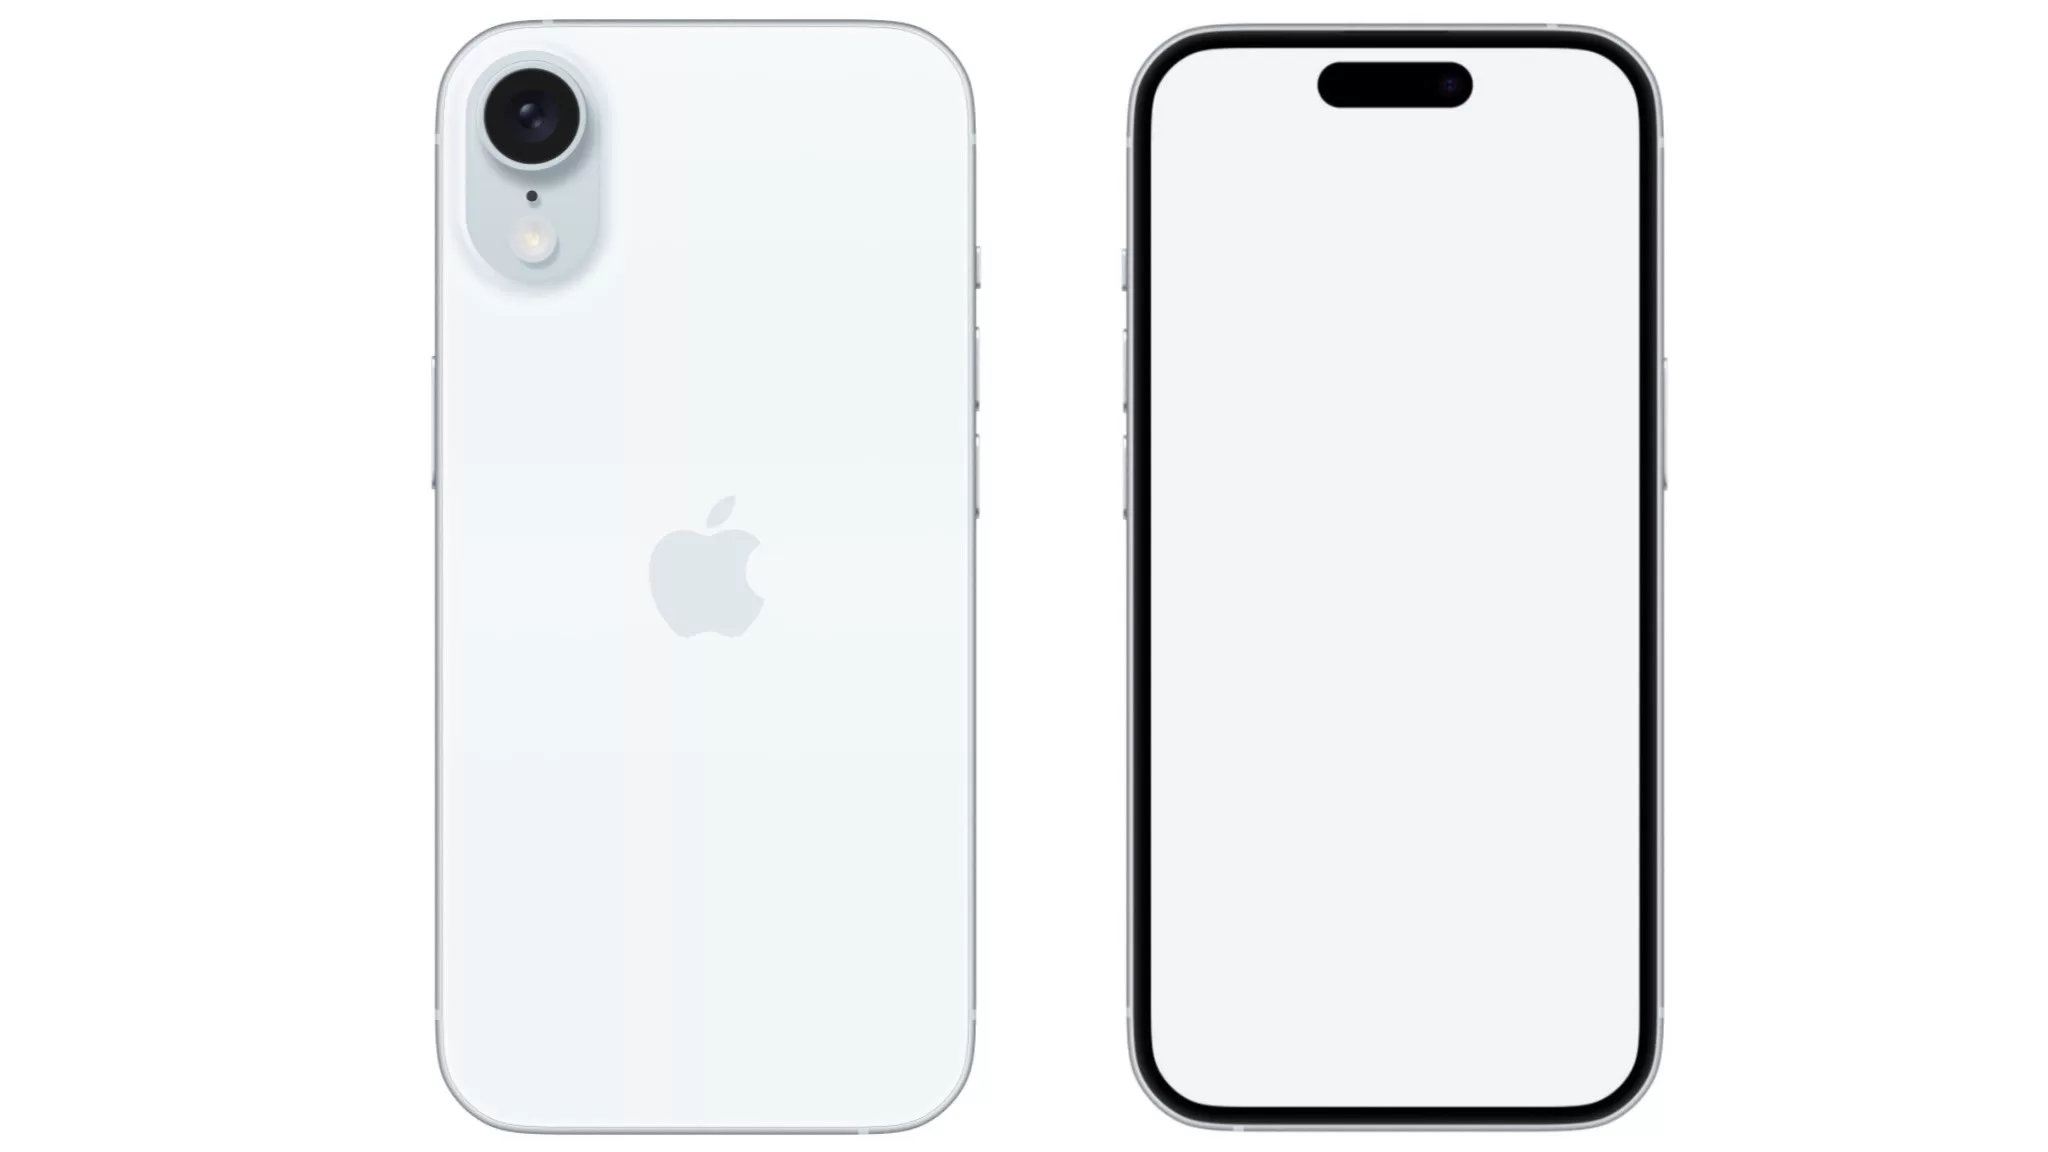 Possível design do Apple iPhone SE de quarta geração, que deve ser lançado em breve.